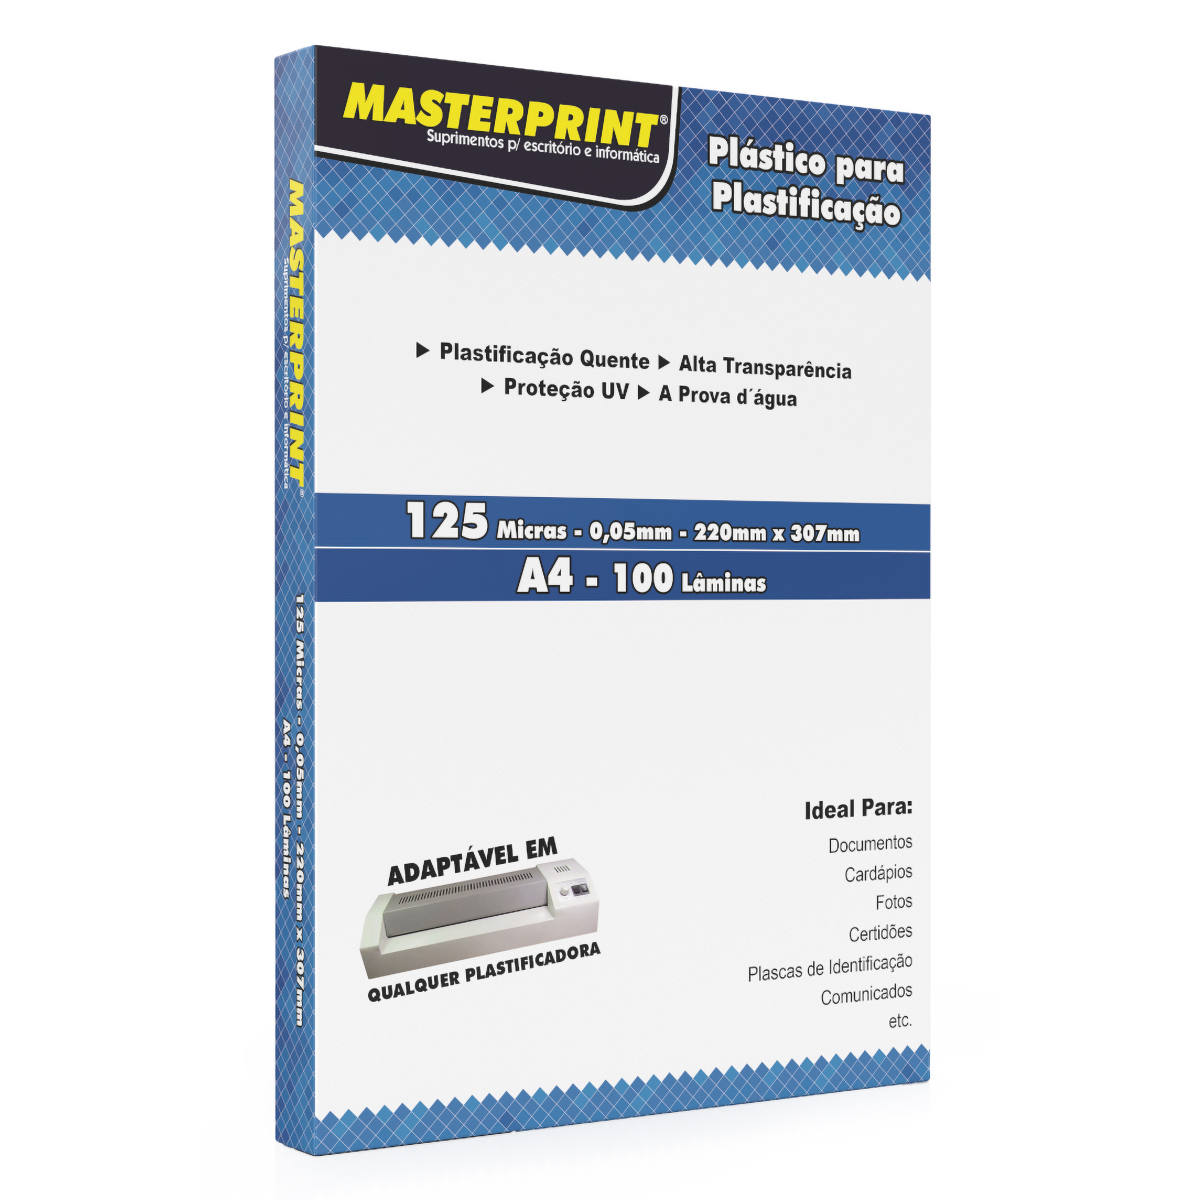 Plástico para Plastificação A4 220x307mm 125 micras 0,05mm Polaseal Pouch Film Masterprint Pacote com 100 lâminas